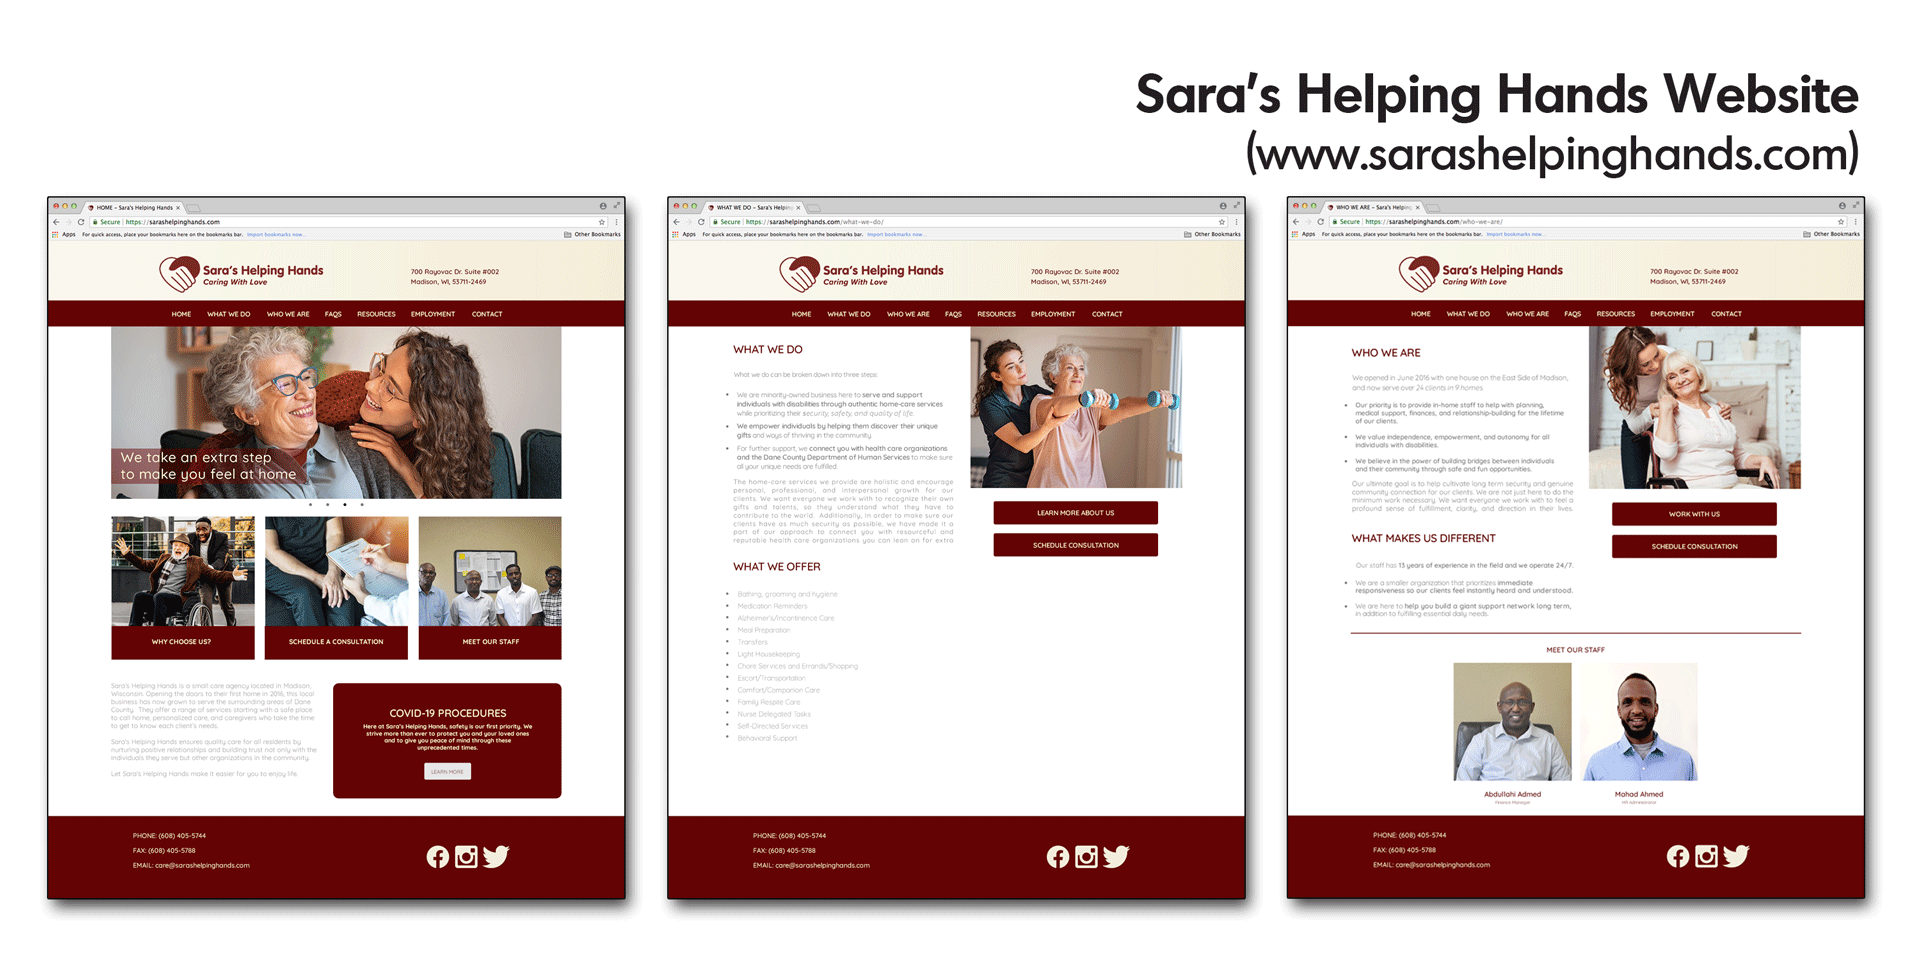 Sara's Helping Hands Website